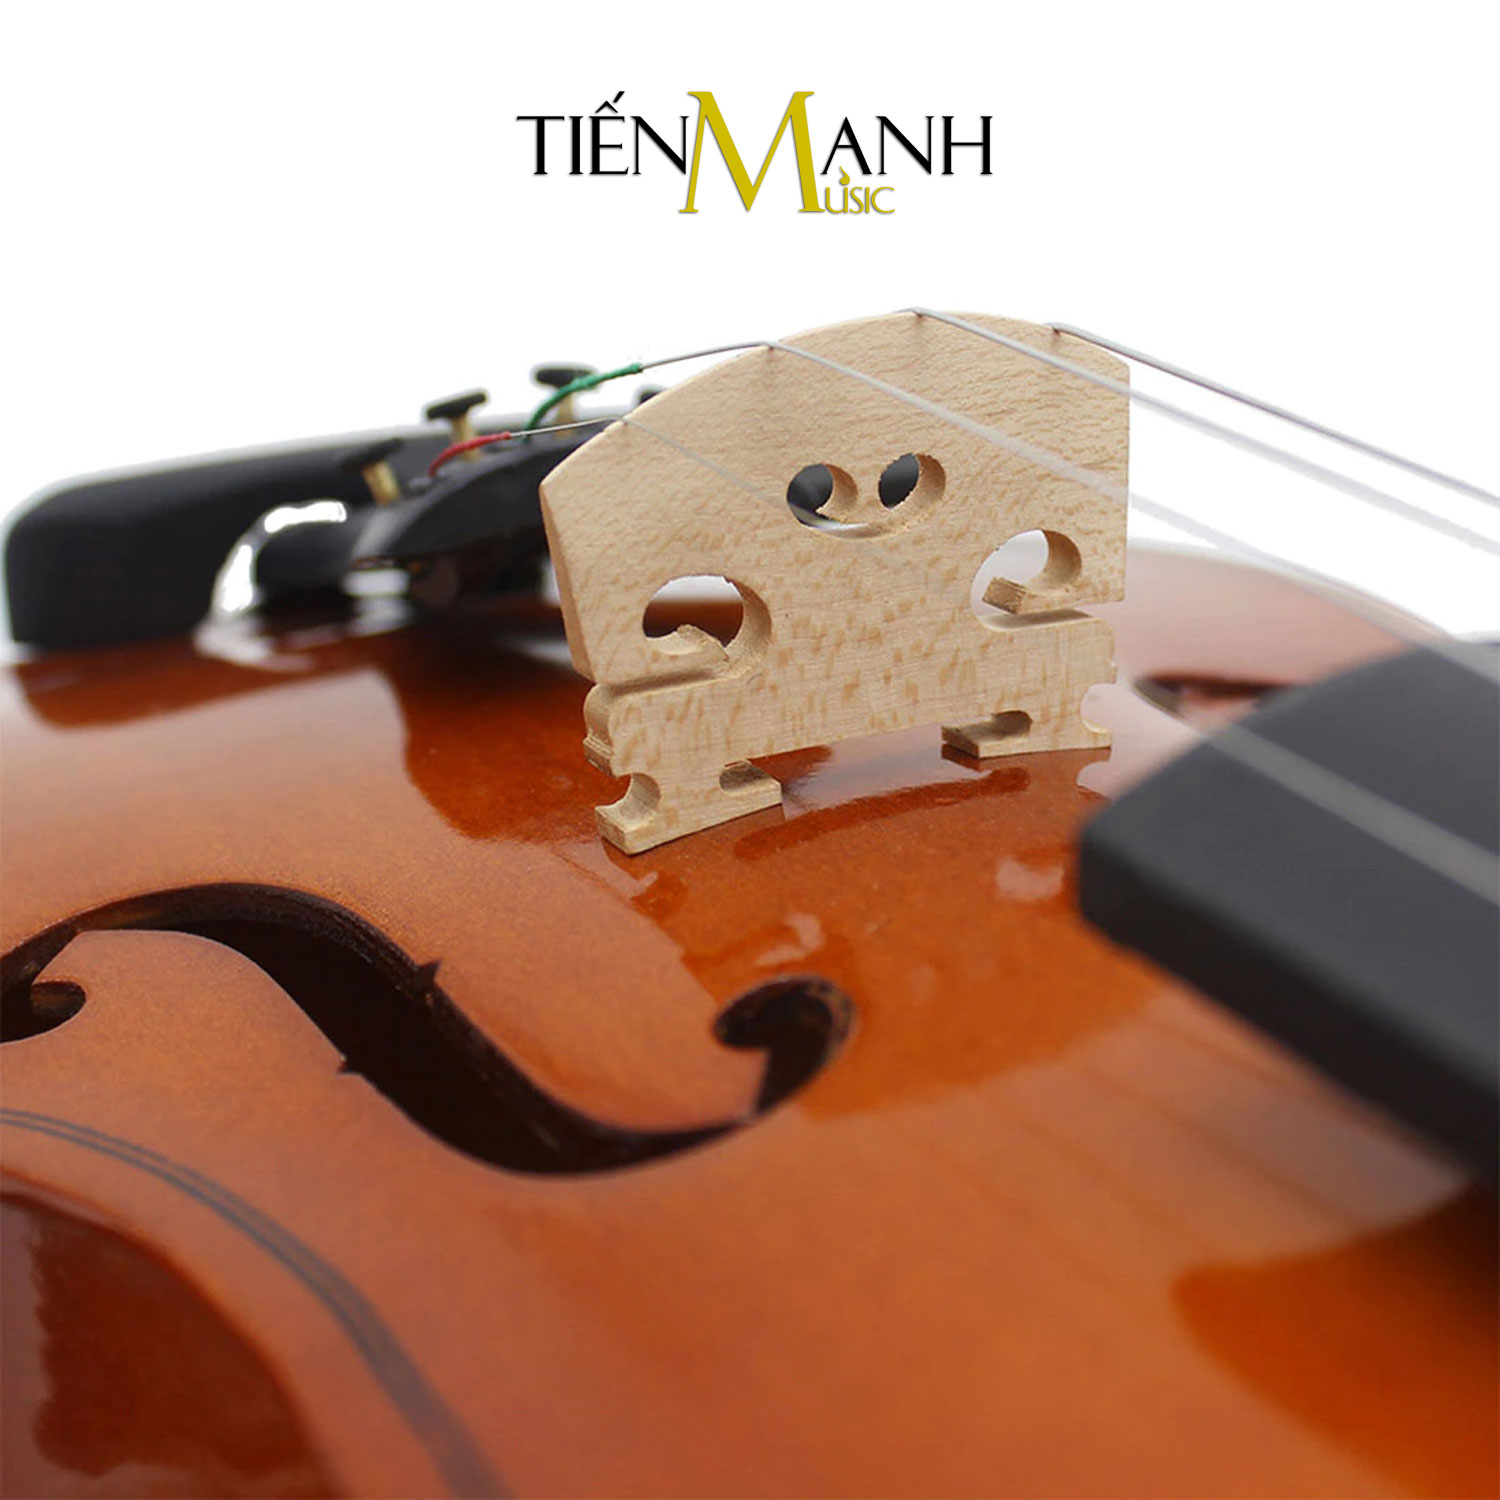 [Chính Hãng, Tặng Sticker] Đàn Violin Omebo RV205 Size 4/4, 3/4, 1/2, 1/4, 1/8, 1/10, 1/16 - Vĩ Cầm RV-205...